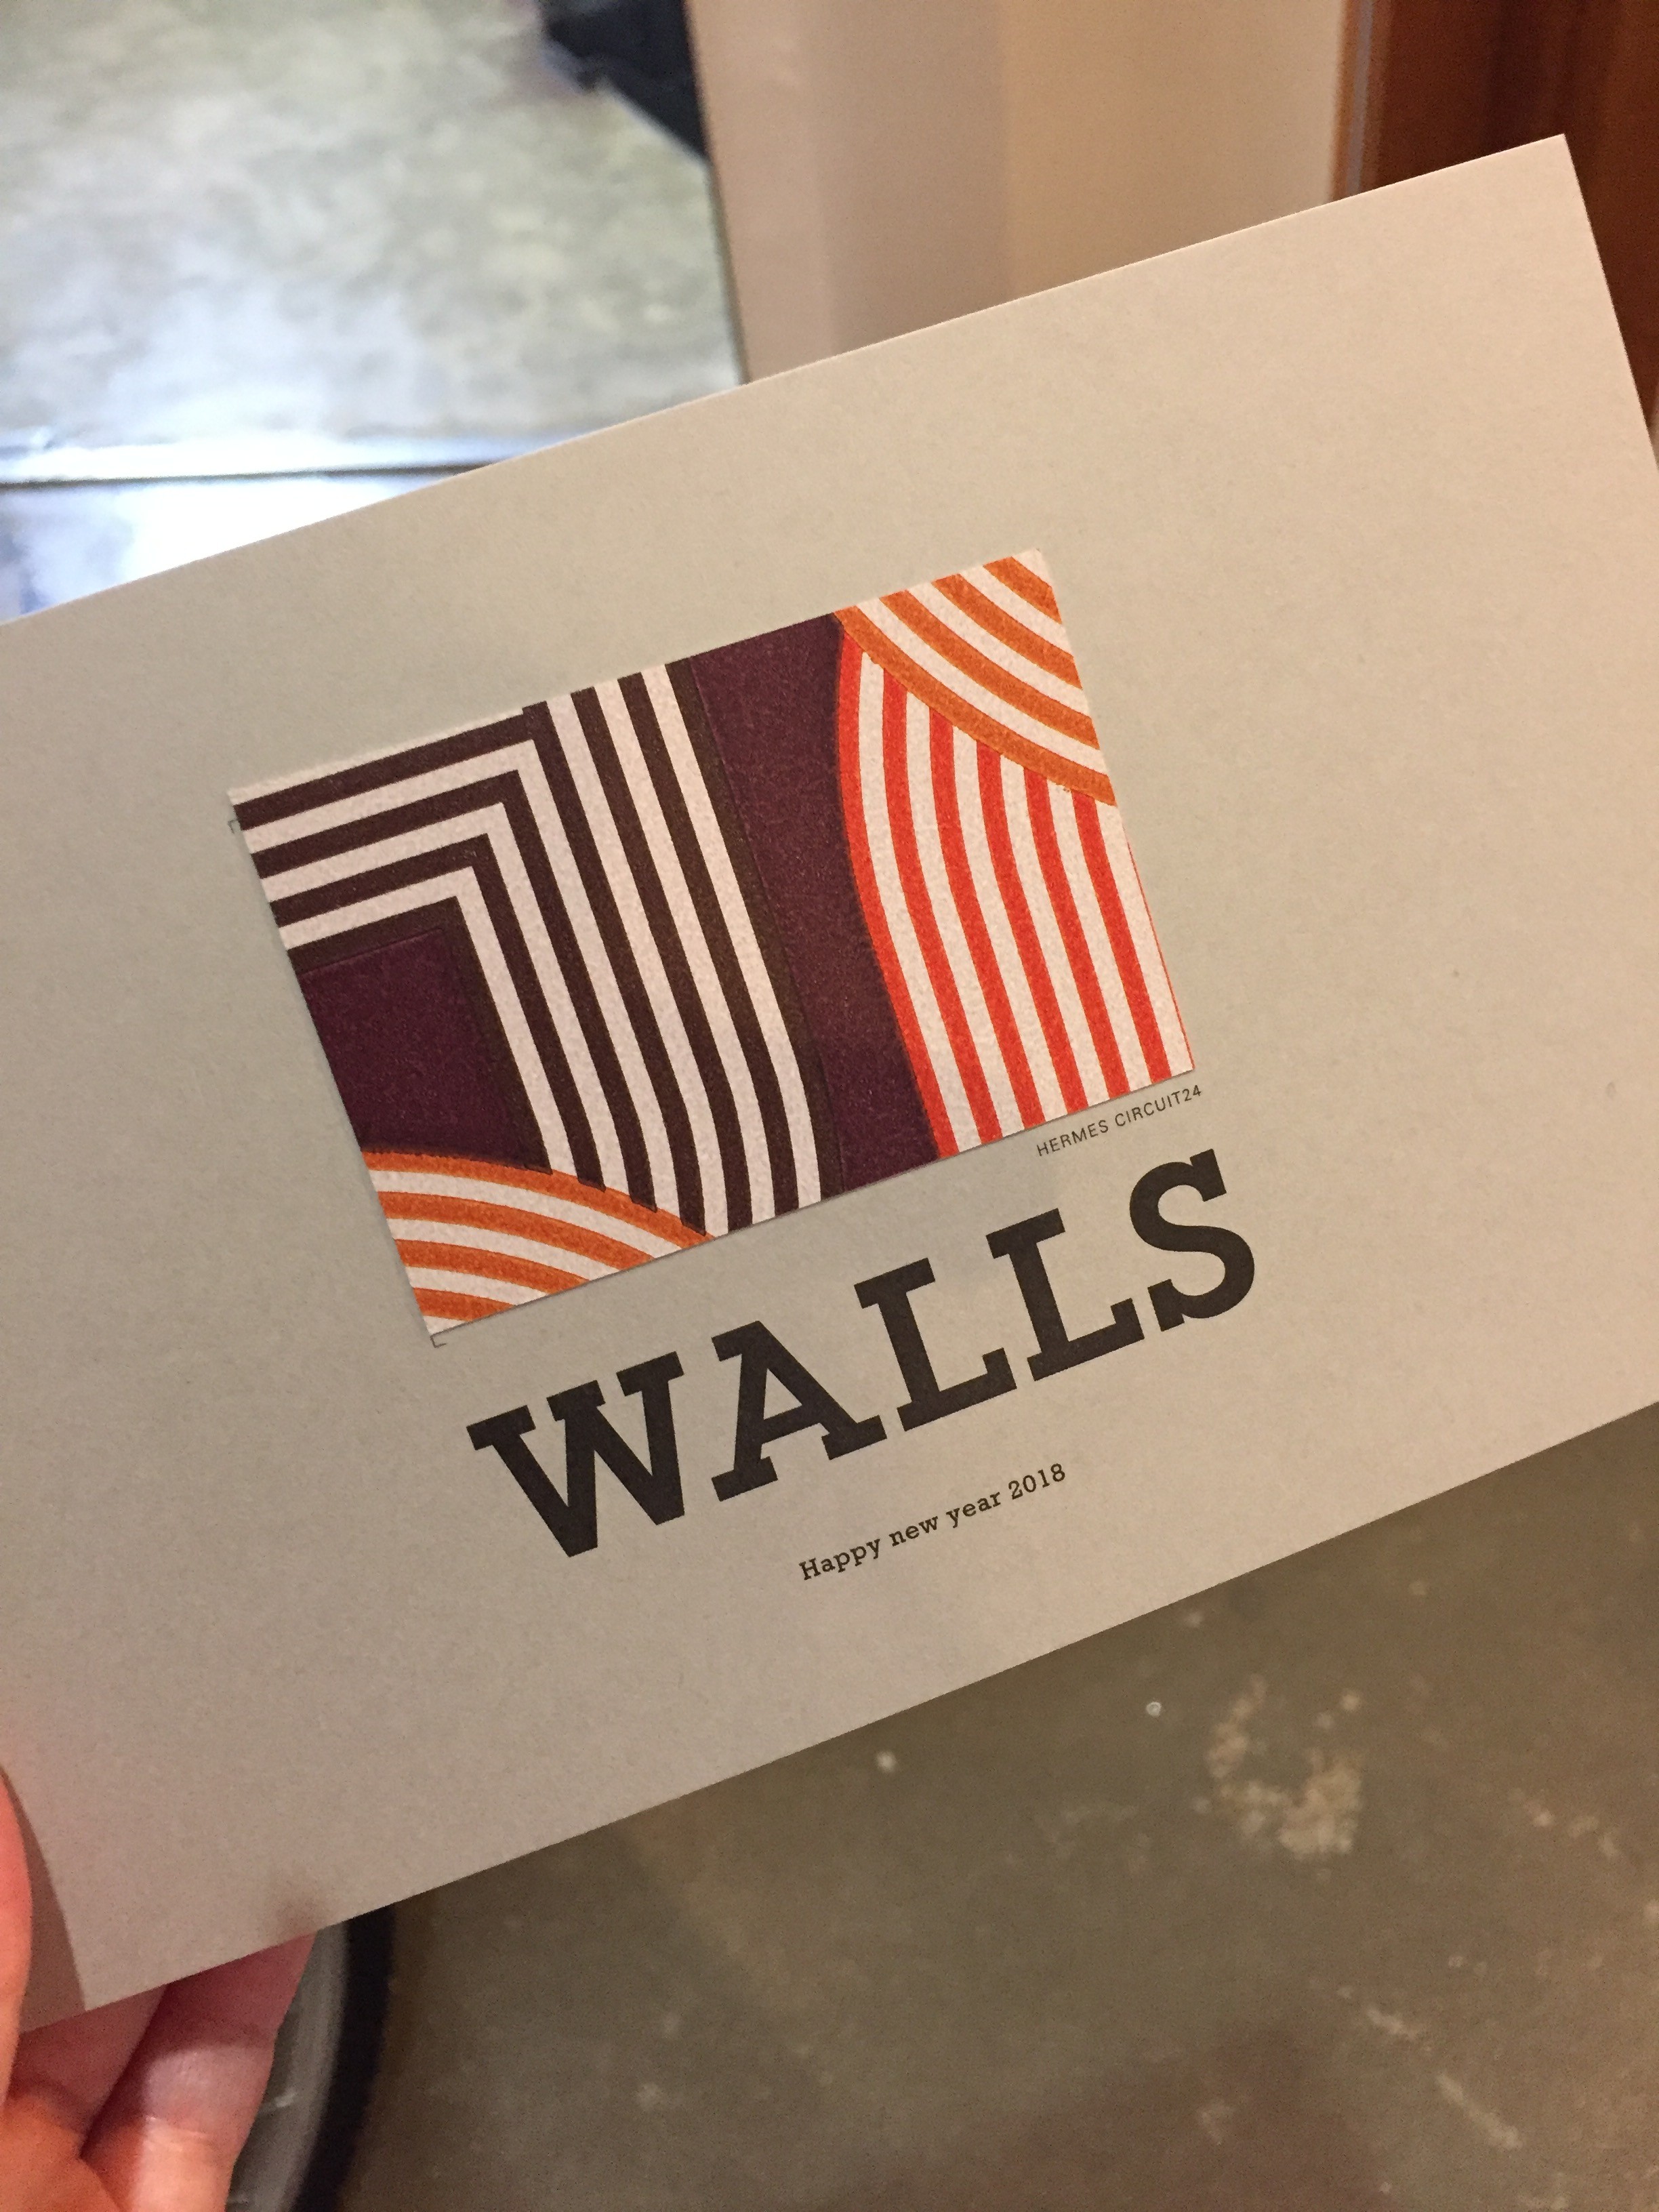 人々に愛される高級ブランドであるエルメスと壁紙のお話 ブログ 輸入壁紙施工専門の株式会社walls